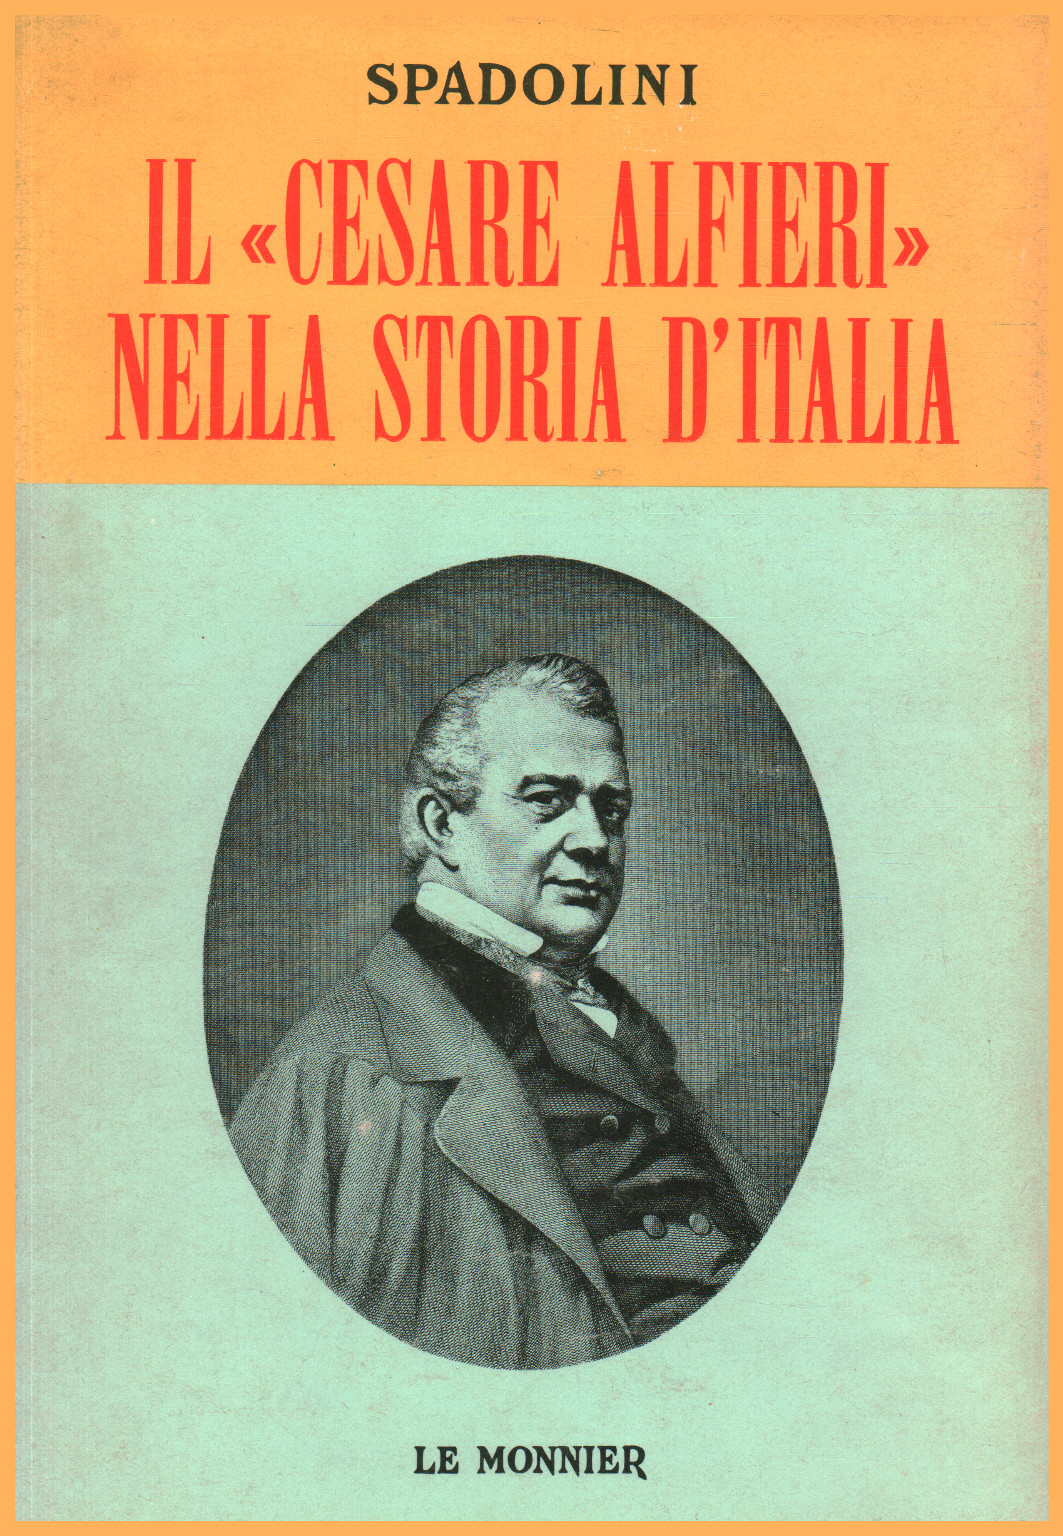 Il "Cesare Alfieri" nella storia d'Italia, s.a.